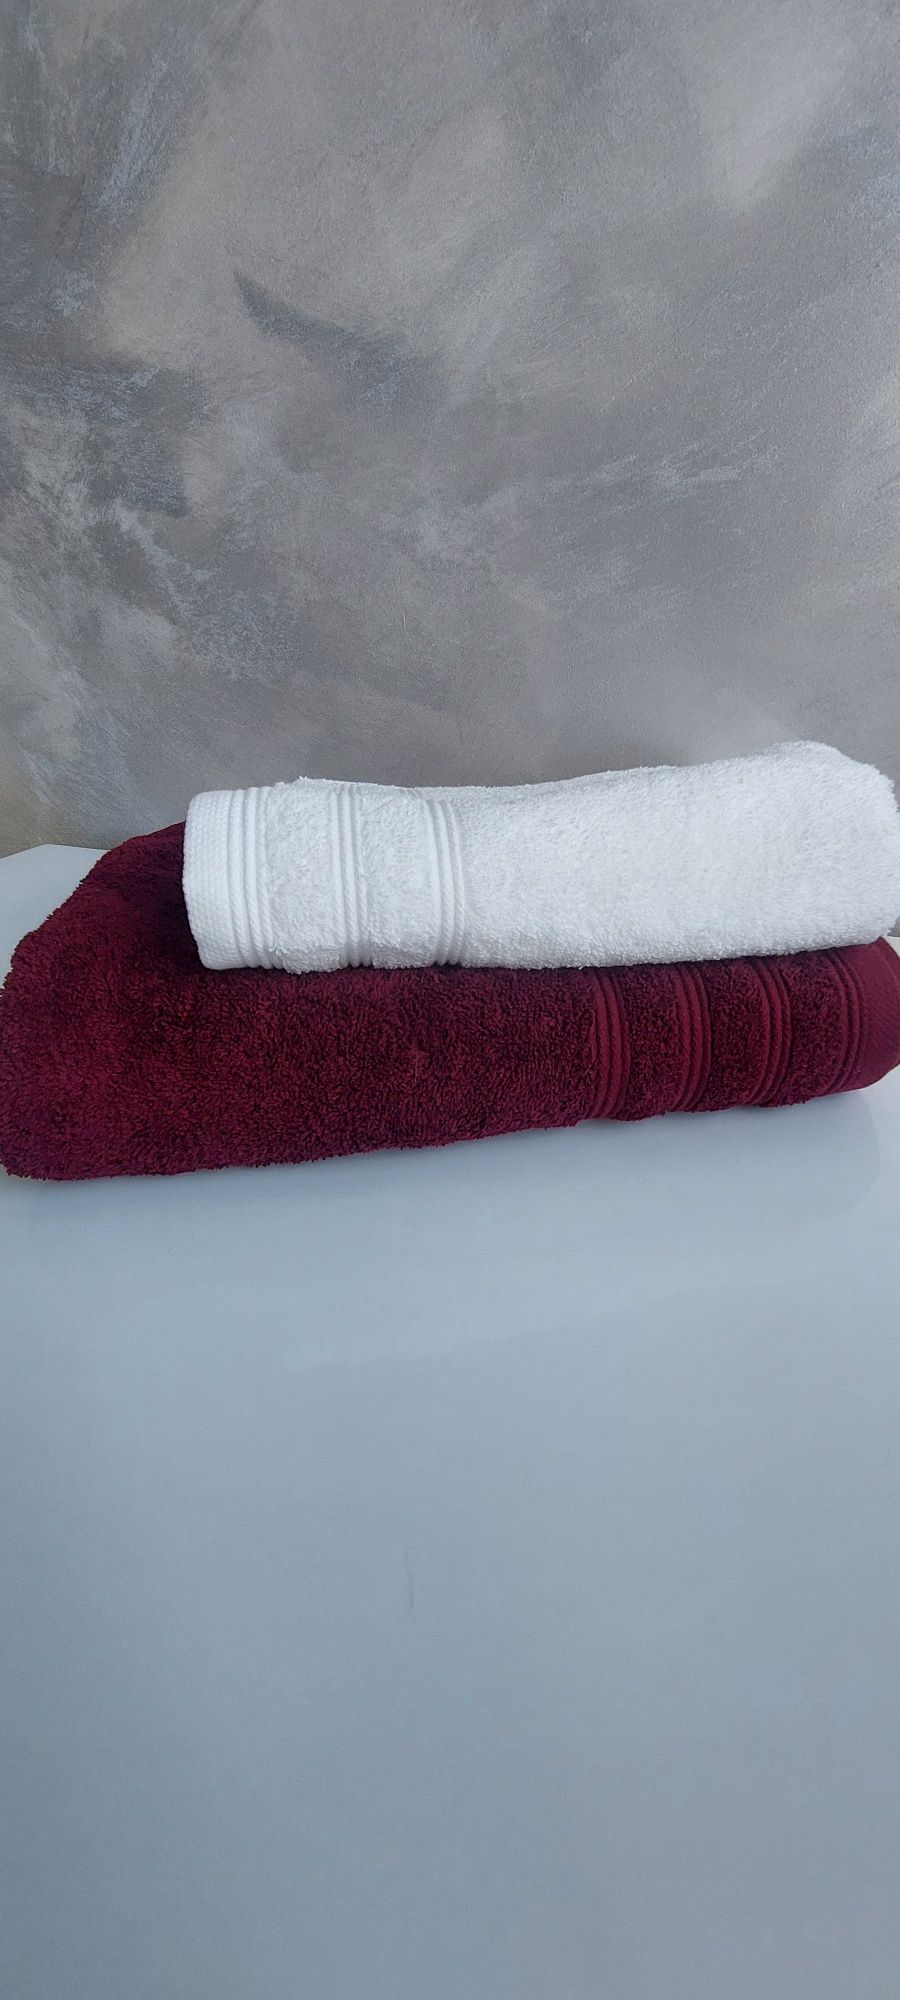 mieszamy kolorami komplet 2 ręczników dobrej jakości premium 550g 1